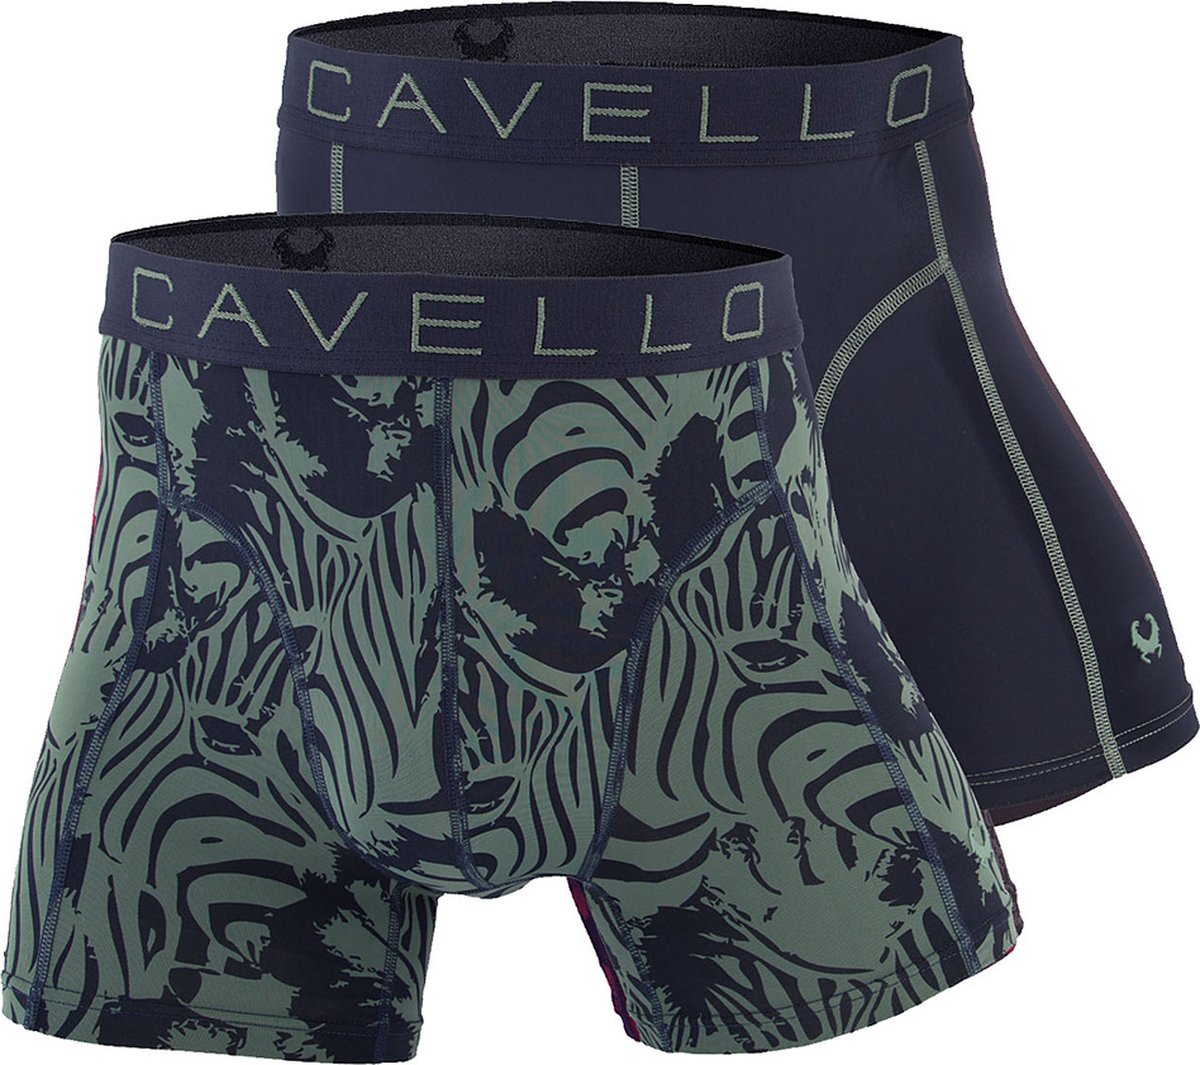 Cavello Microfiber Boxershorts 2-pack Dark Grey